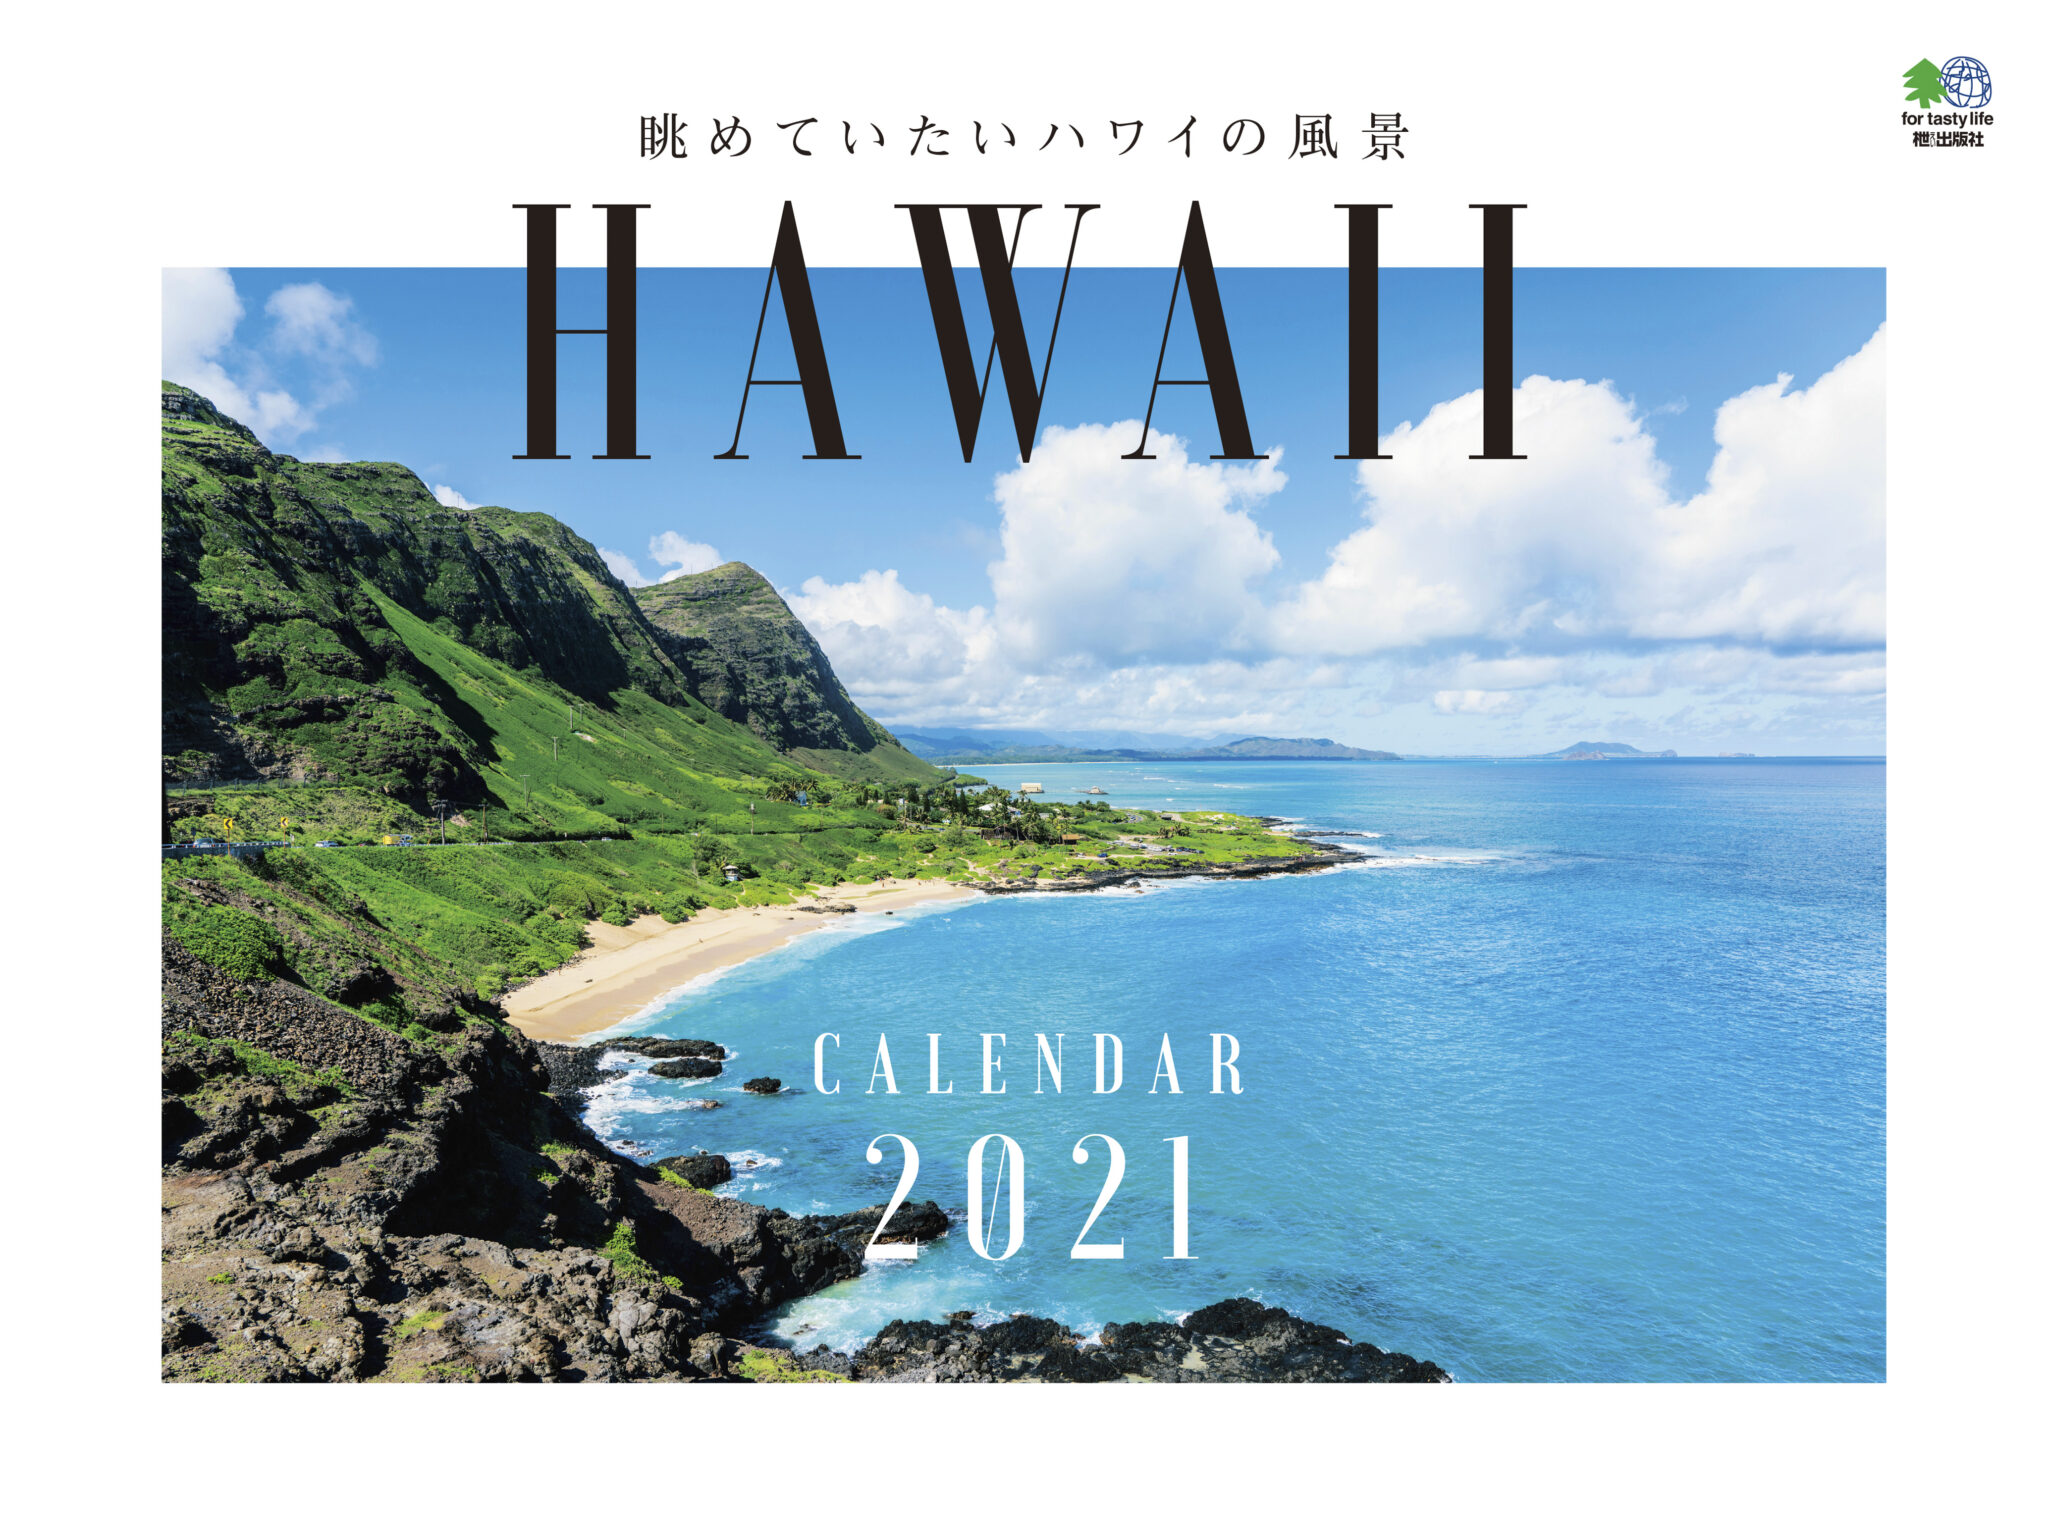 HAWAII CALENDAR 2021